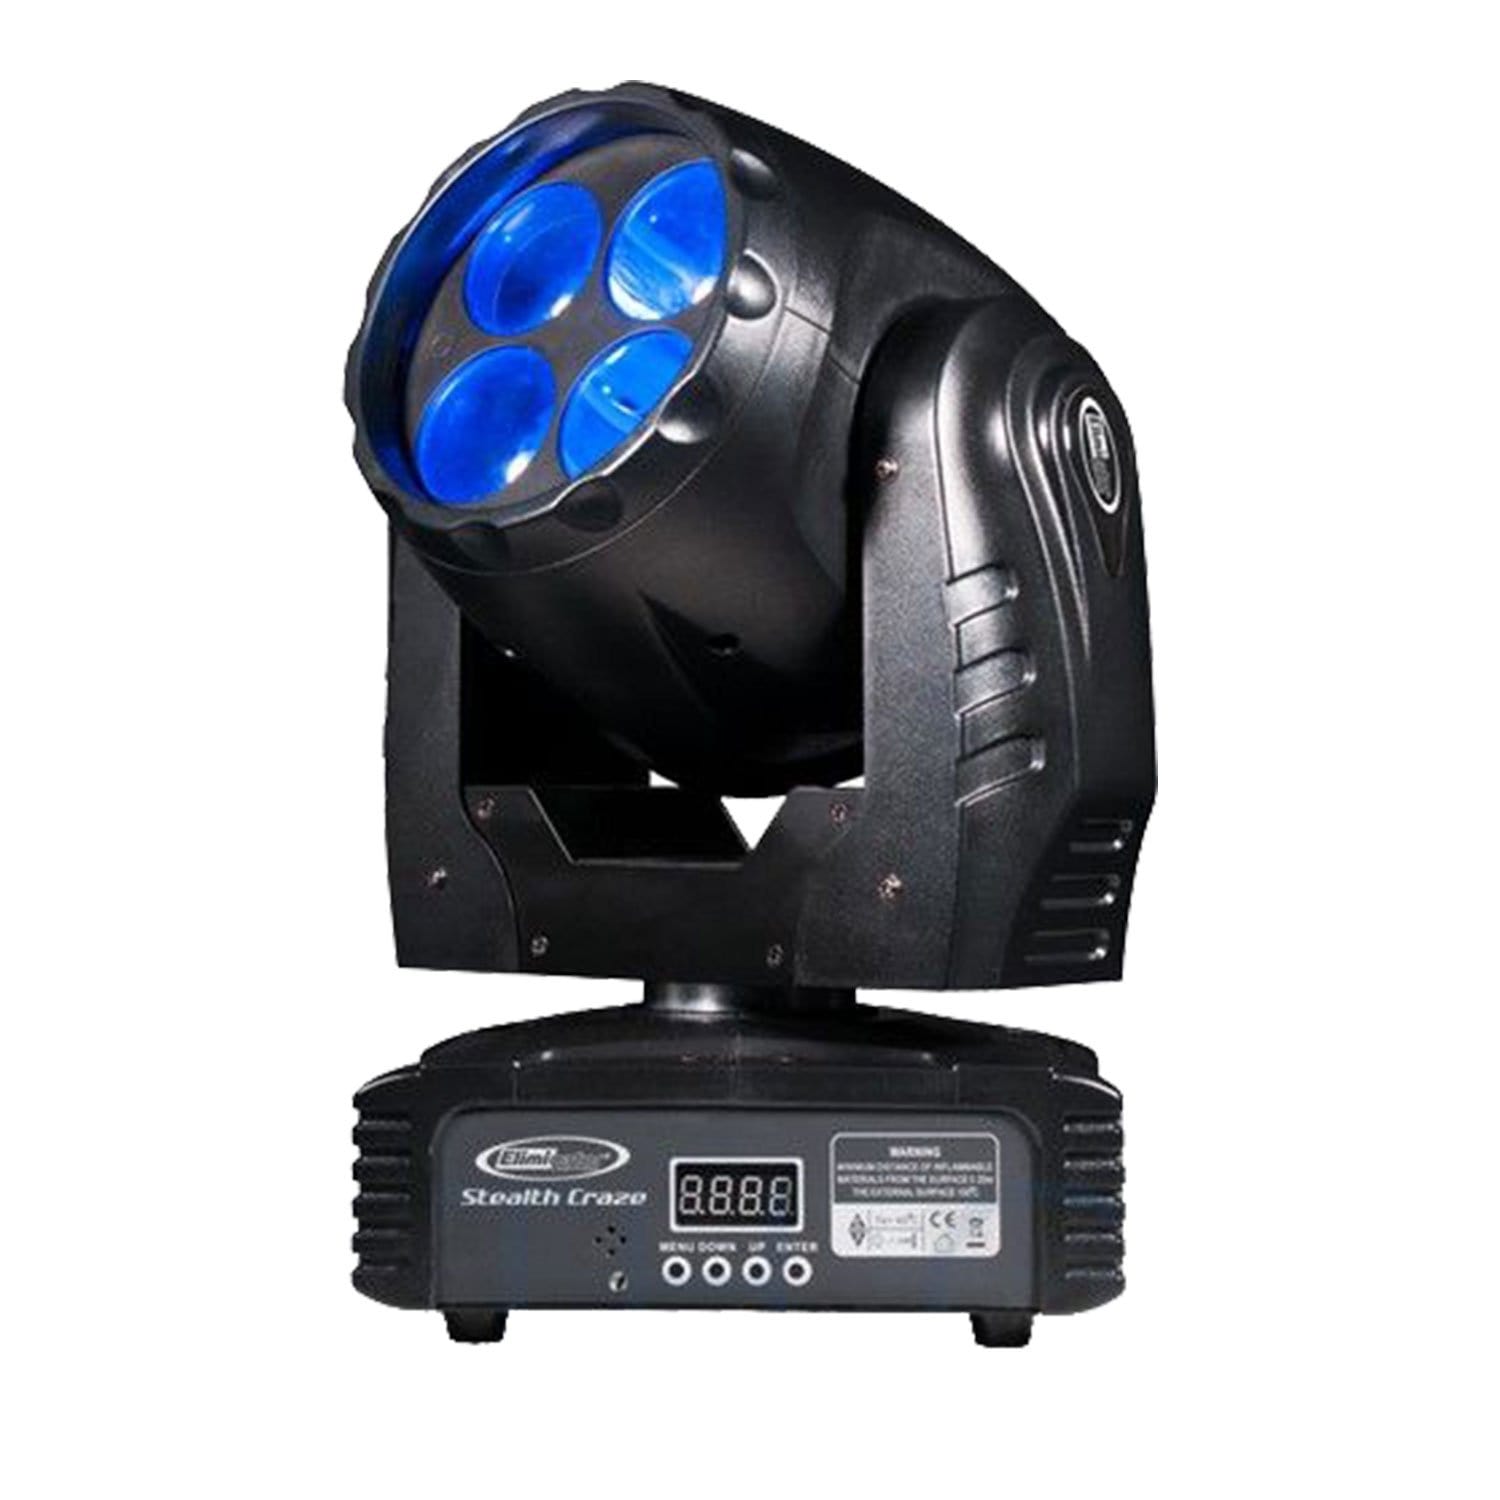 Eliminator Stealth Craze LED Moving Head 4-Pack Lighting System - PSSL ProSound and Stage Lighting